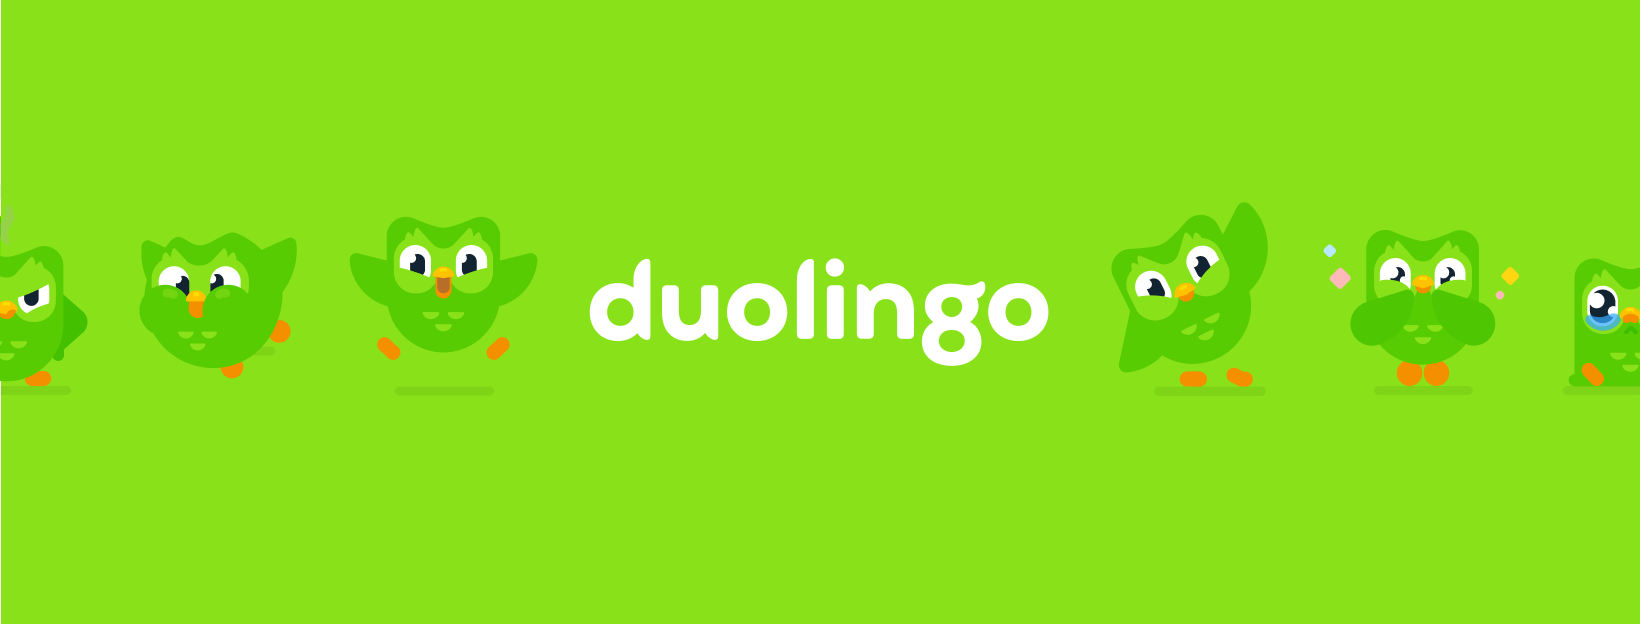 Duolingo - phần mềm học tiếng Anh miễn phí